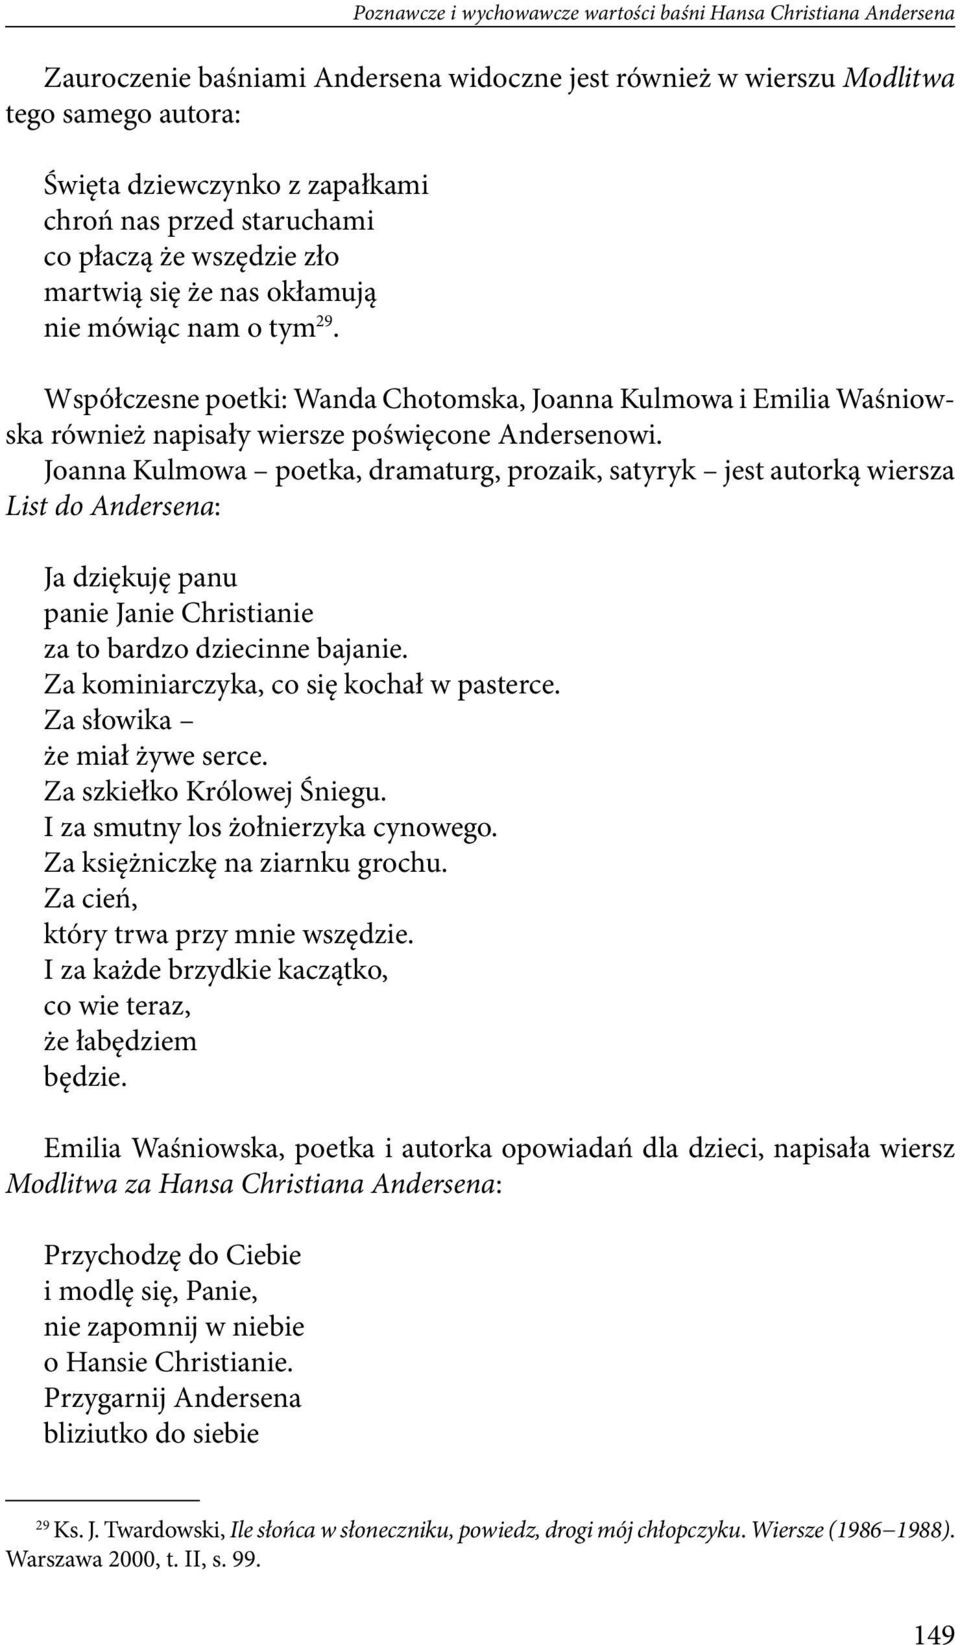 Współczesne poetki: Wanda Chotomska, Joanna Kulmowa i Emilia Waśniowska również napisały wiersze poświęcone Andersenowi.